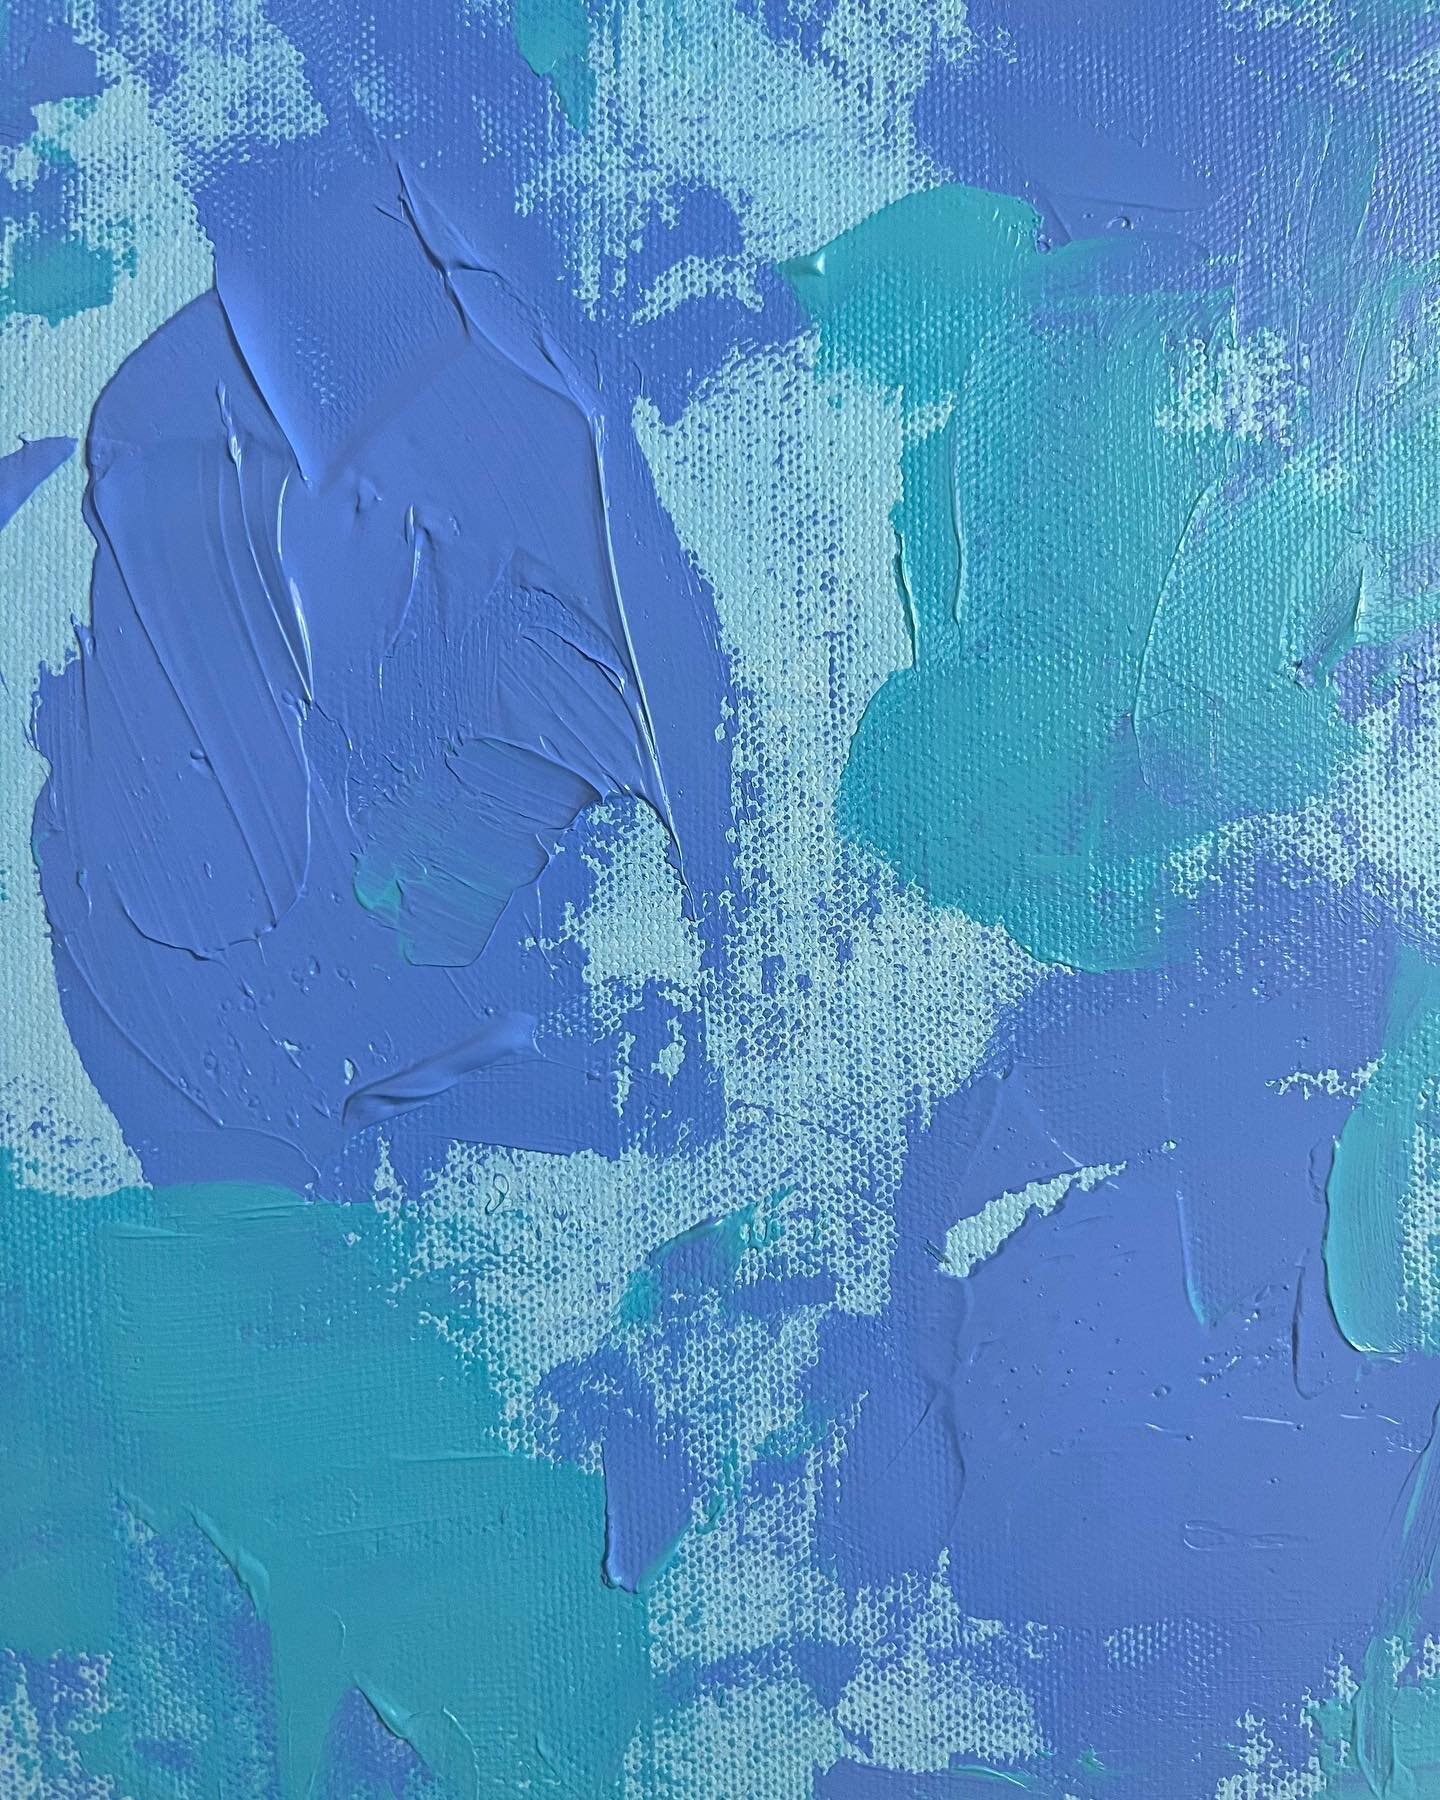 Blue always calls me back 💙 #workinprogress 
.
.
.
.
.
.
.
.
#brobinsonart #art #artist #womenartists #localart #acrylicpainting #artforsale #abstractlovers #artofinstagram #artcollector #abstract #acrylicart #houston #connectingppltoart #interiorde